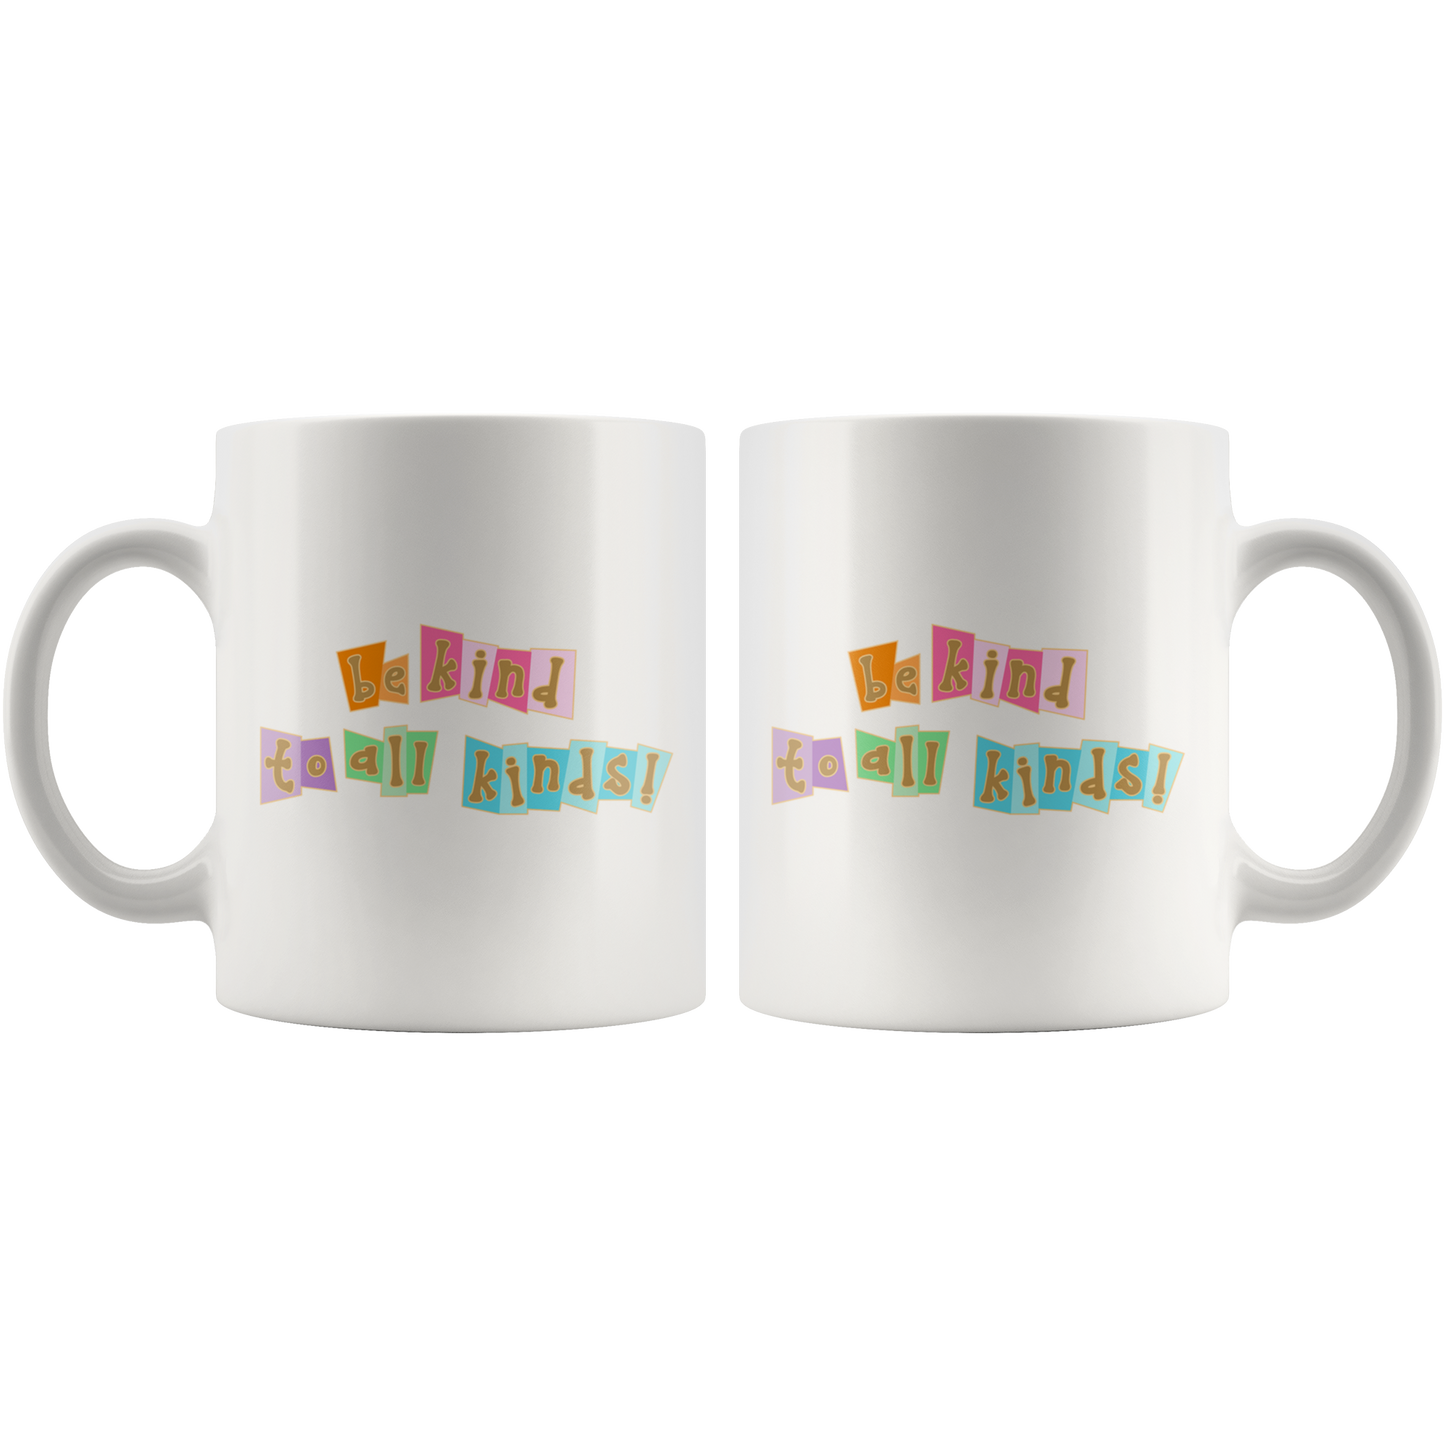 Be Kind to All Kinds - White Mug